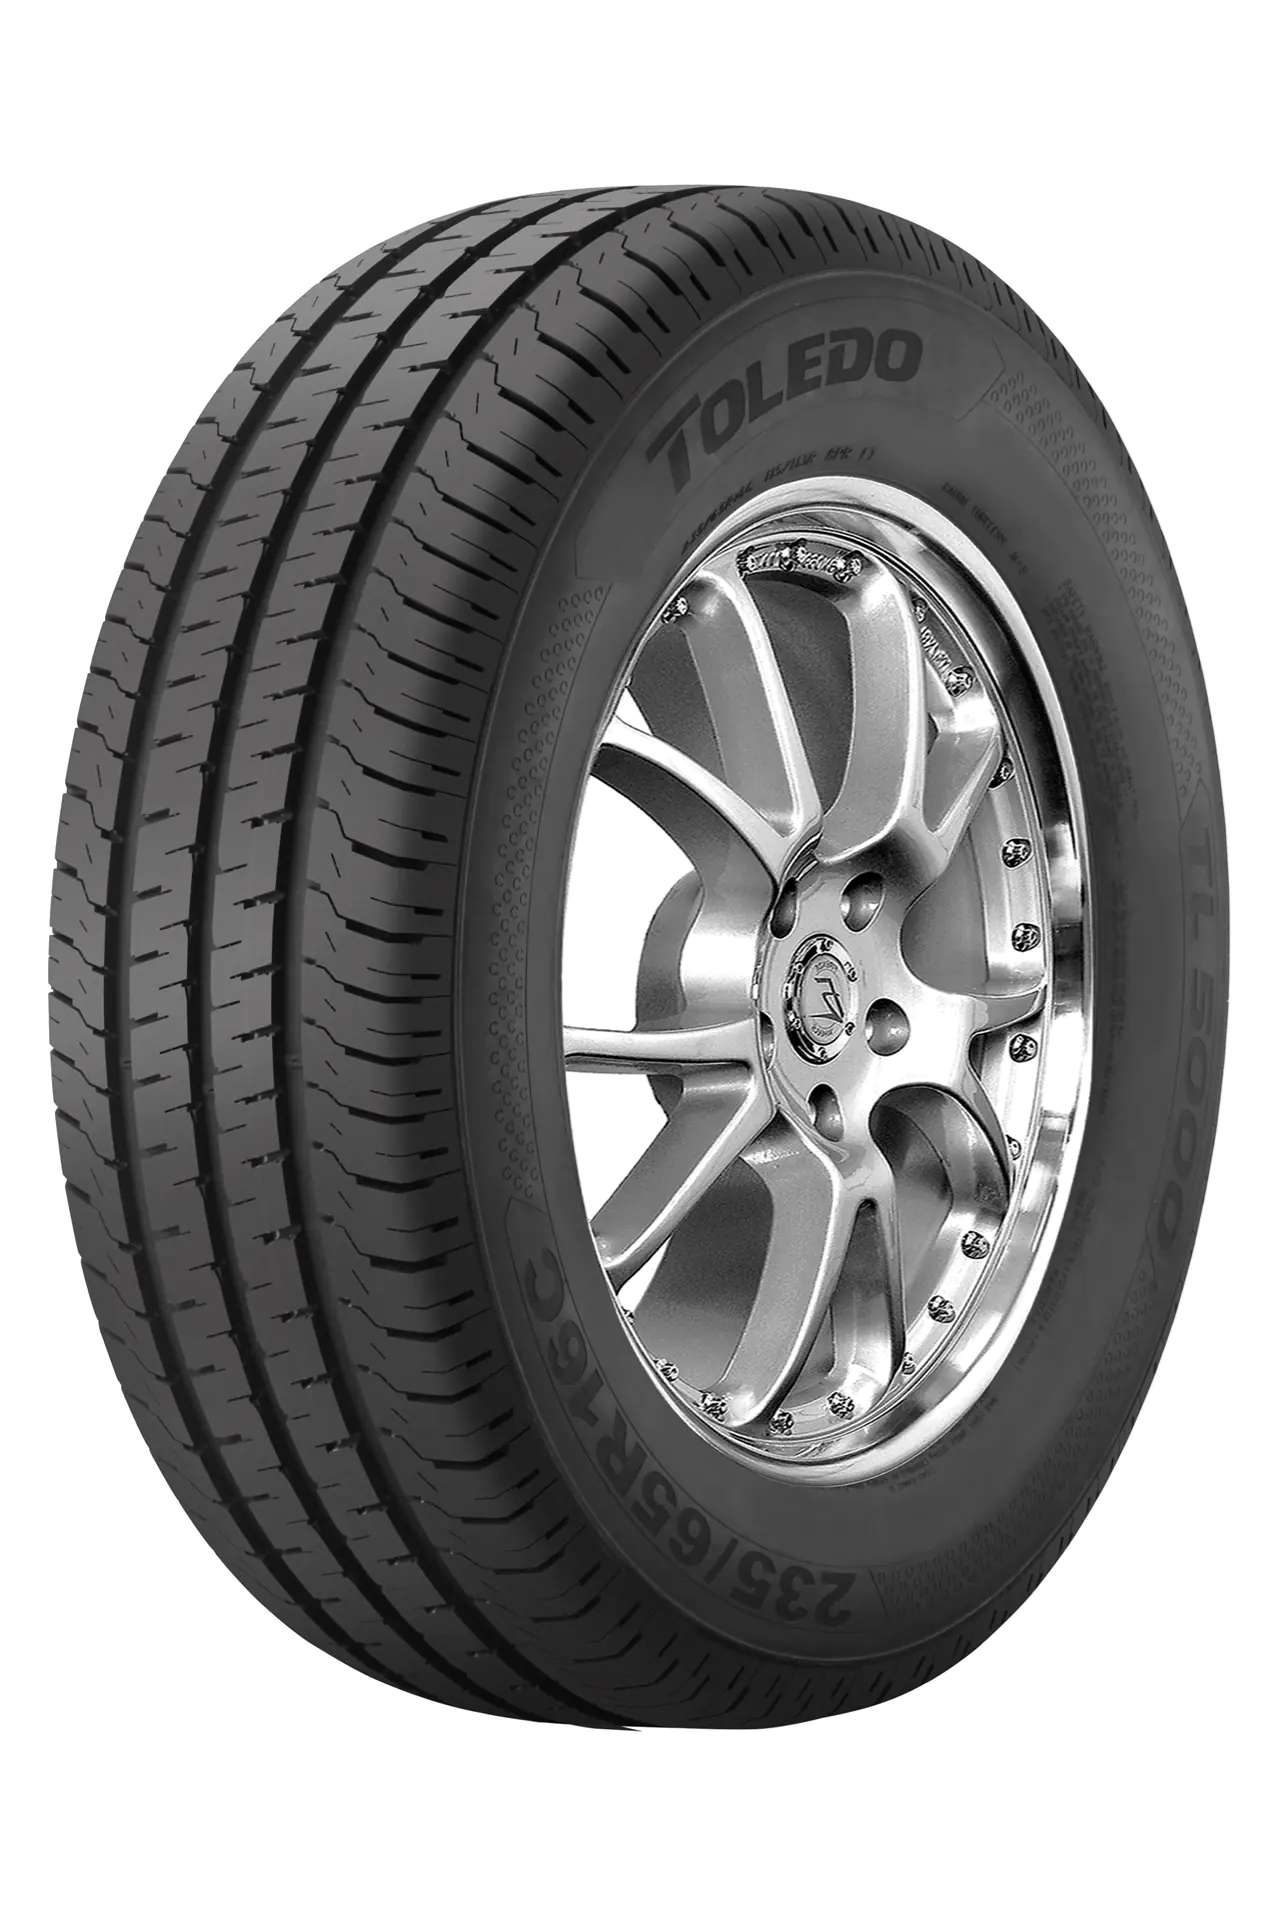 Toledo Toledo 205/70 R15C 106R TL5000 pneumatici nuovi Estivo 